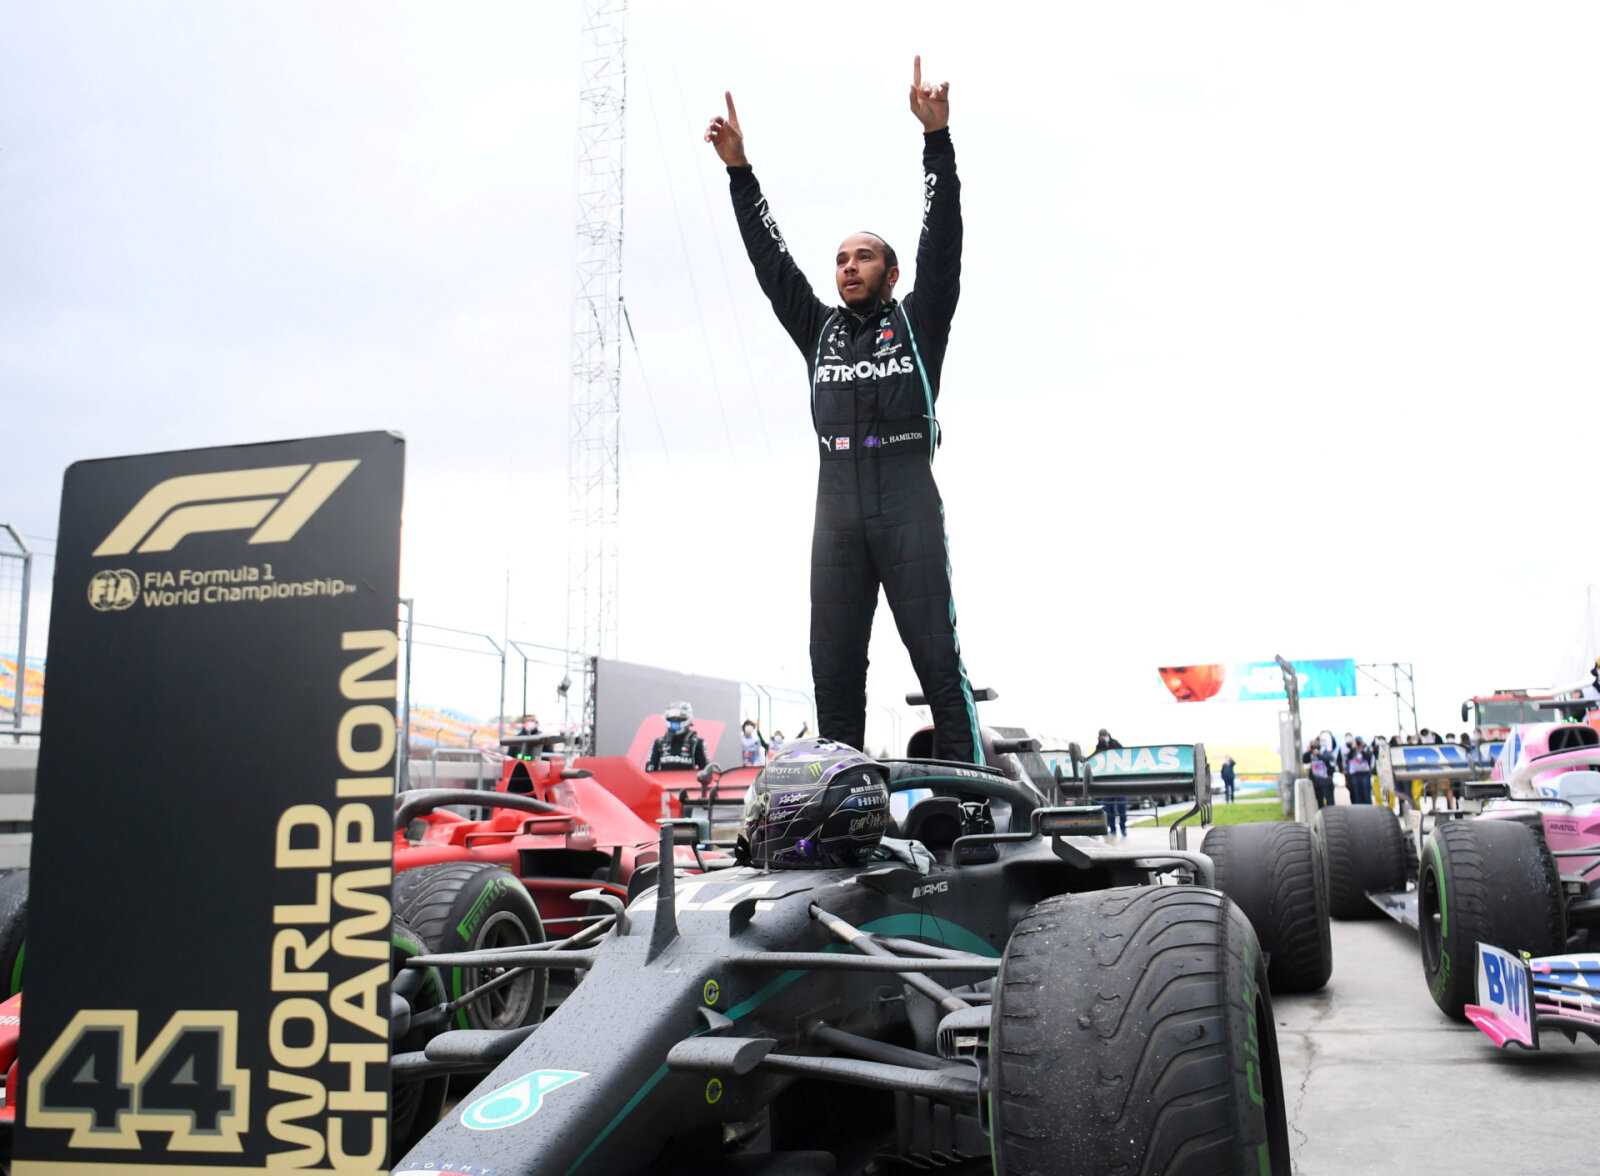 Lewis Hamilton de Mercedes célèbre son 7e titre mondial de F1 au GP de Turquie 2020